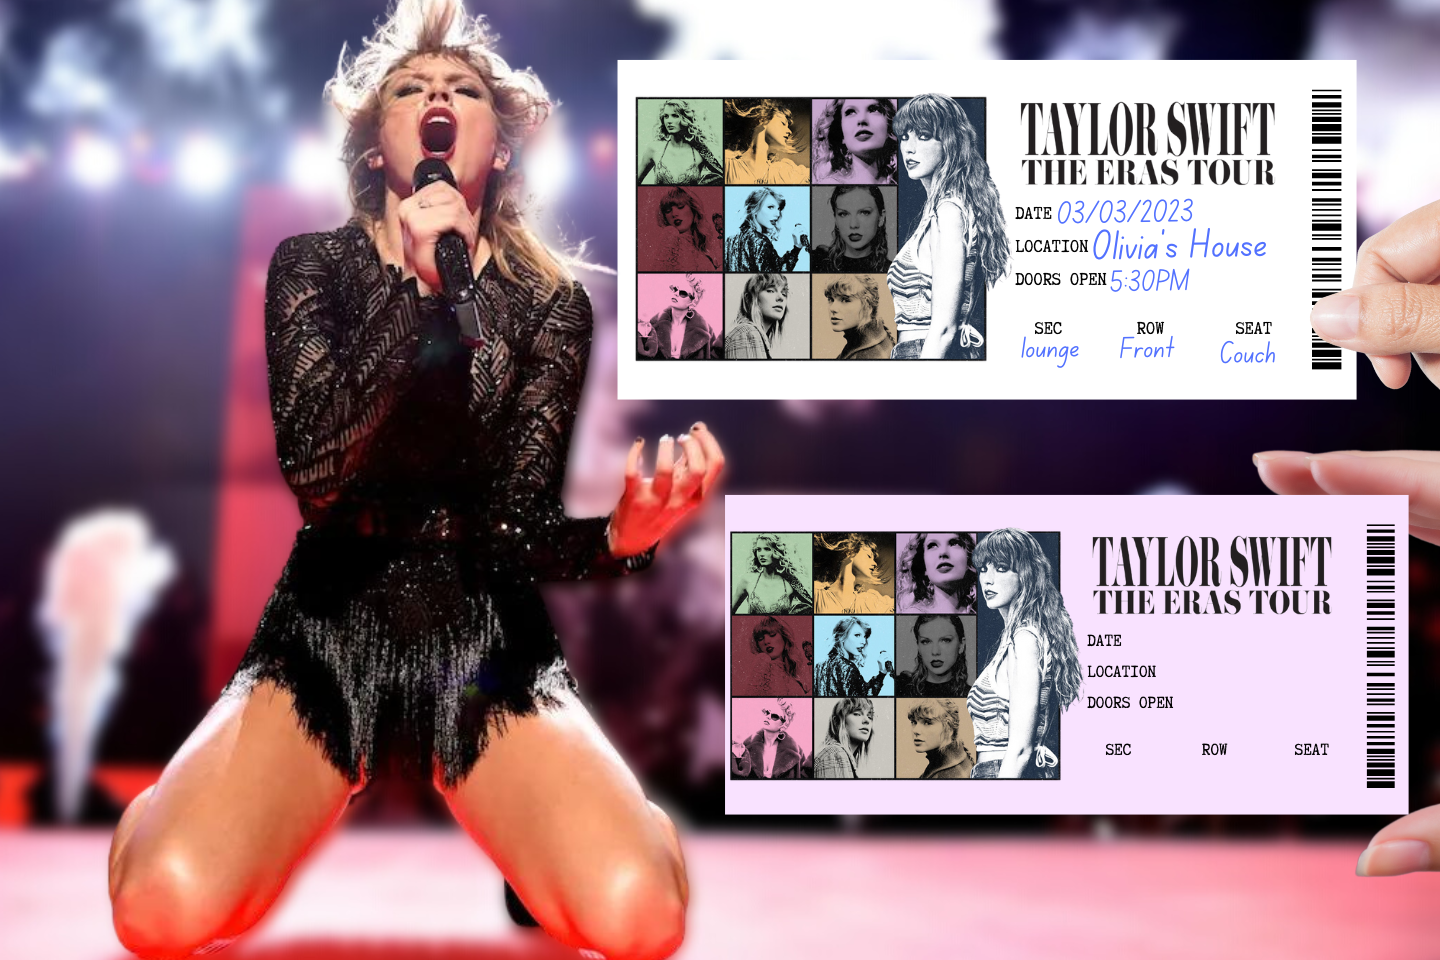 Taylor Swift Eras Tour / Birthday Mariah's Eras Tour